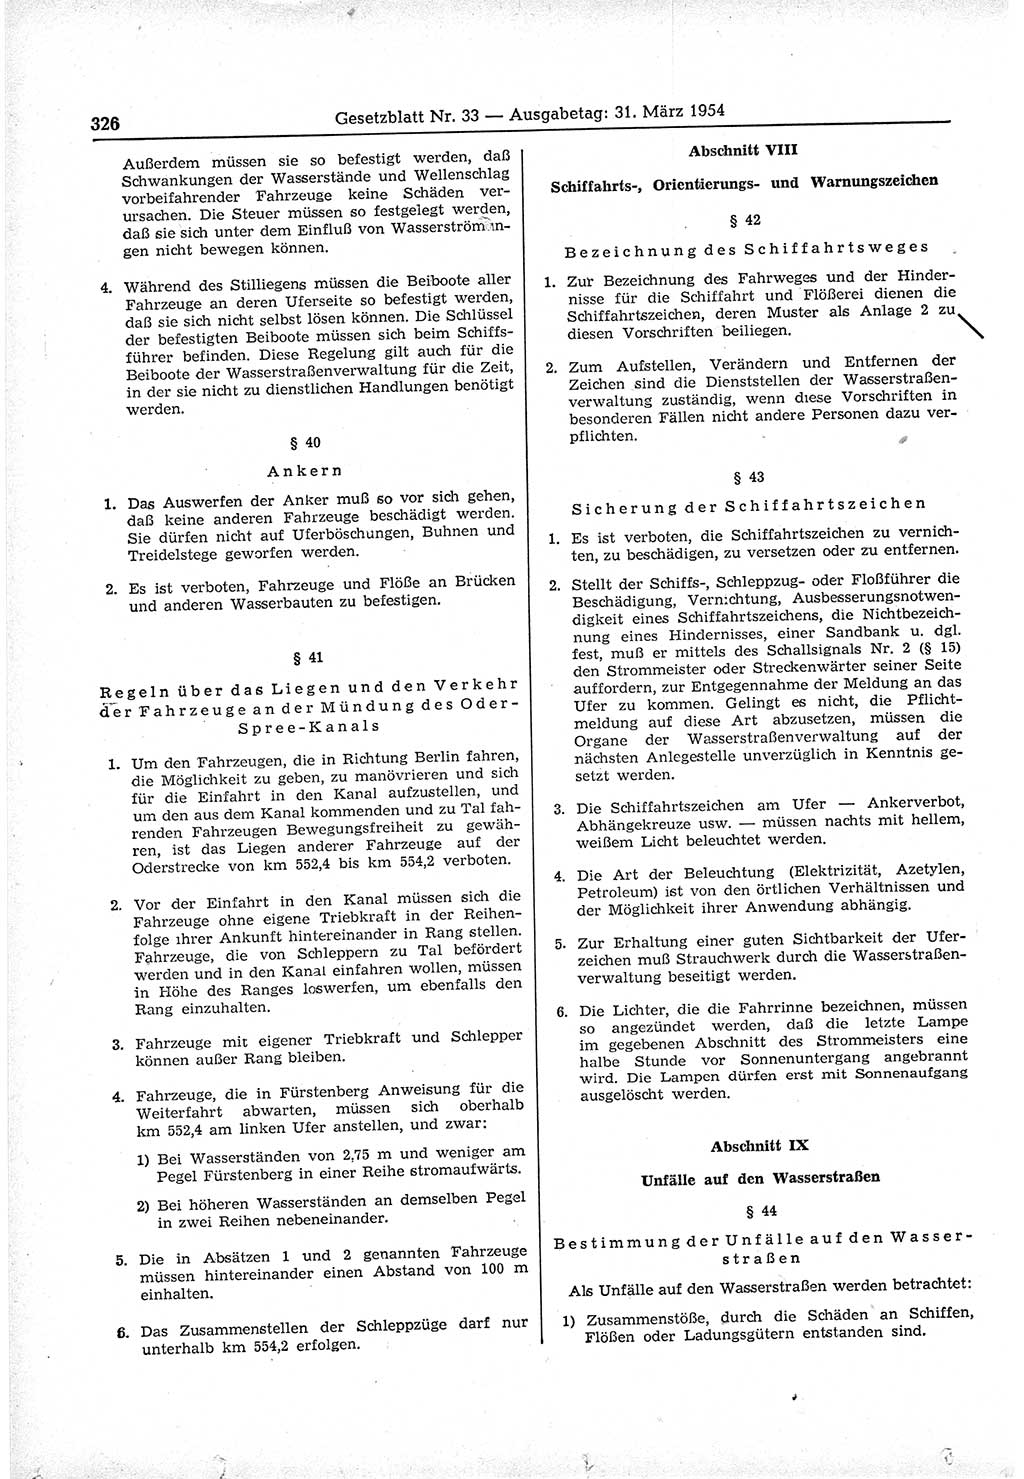 Gesetzblatt (GBl.) der Deutschen Demokratischen Republik (DDR) 1954, Seite 326 (GBl. DDR 1954, S. 326)